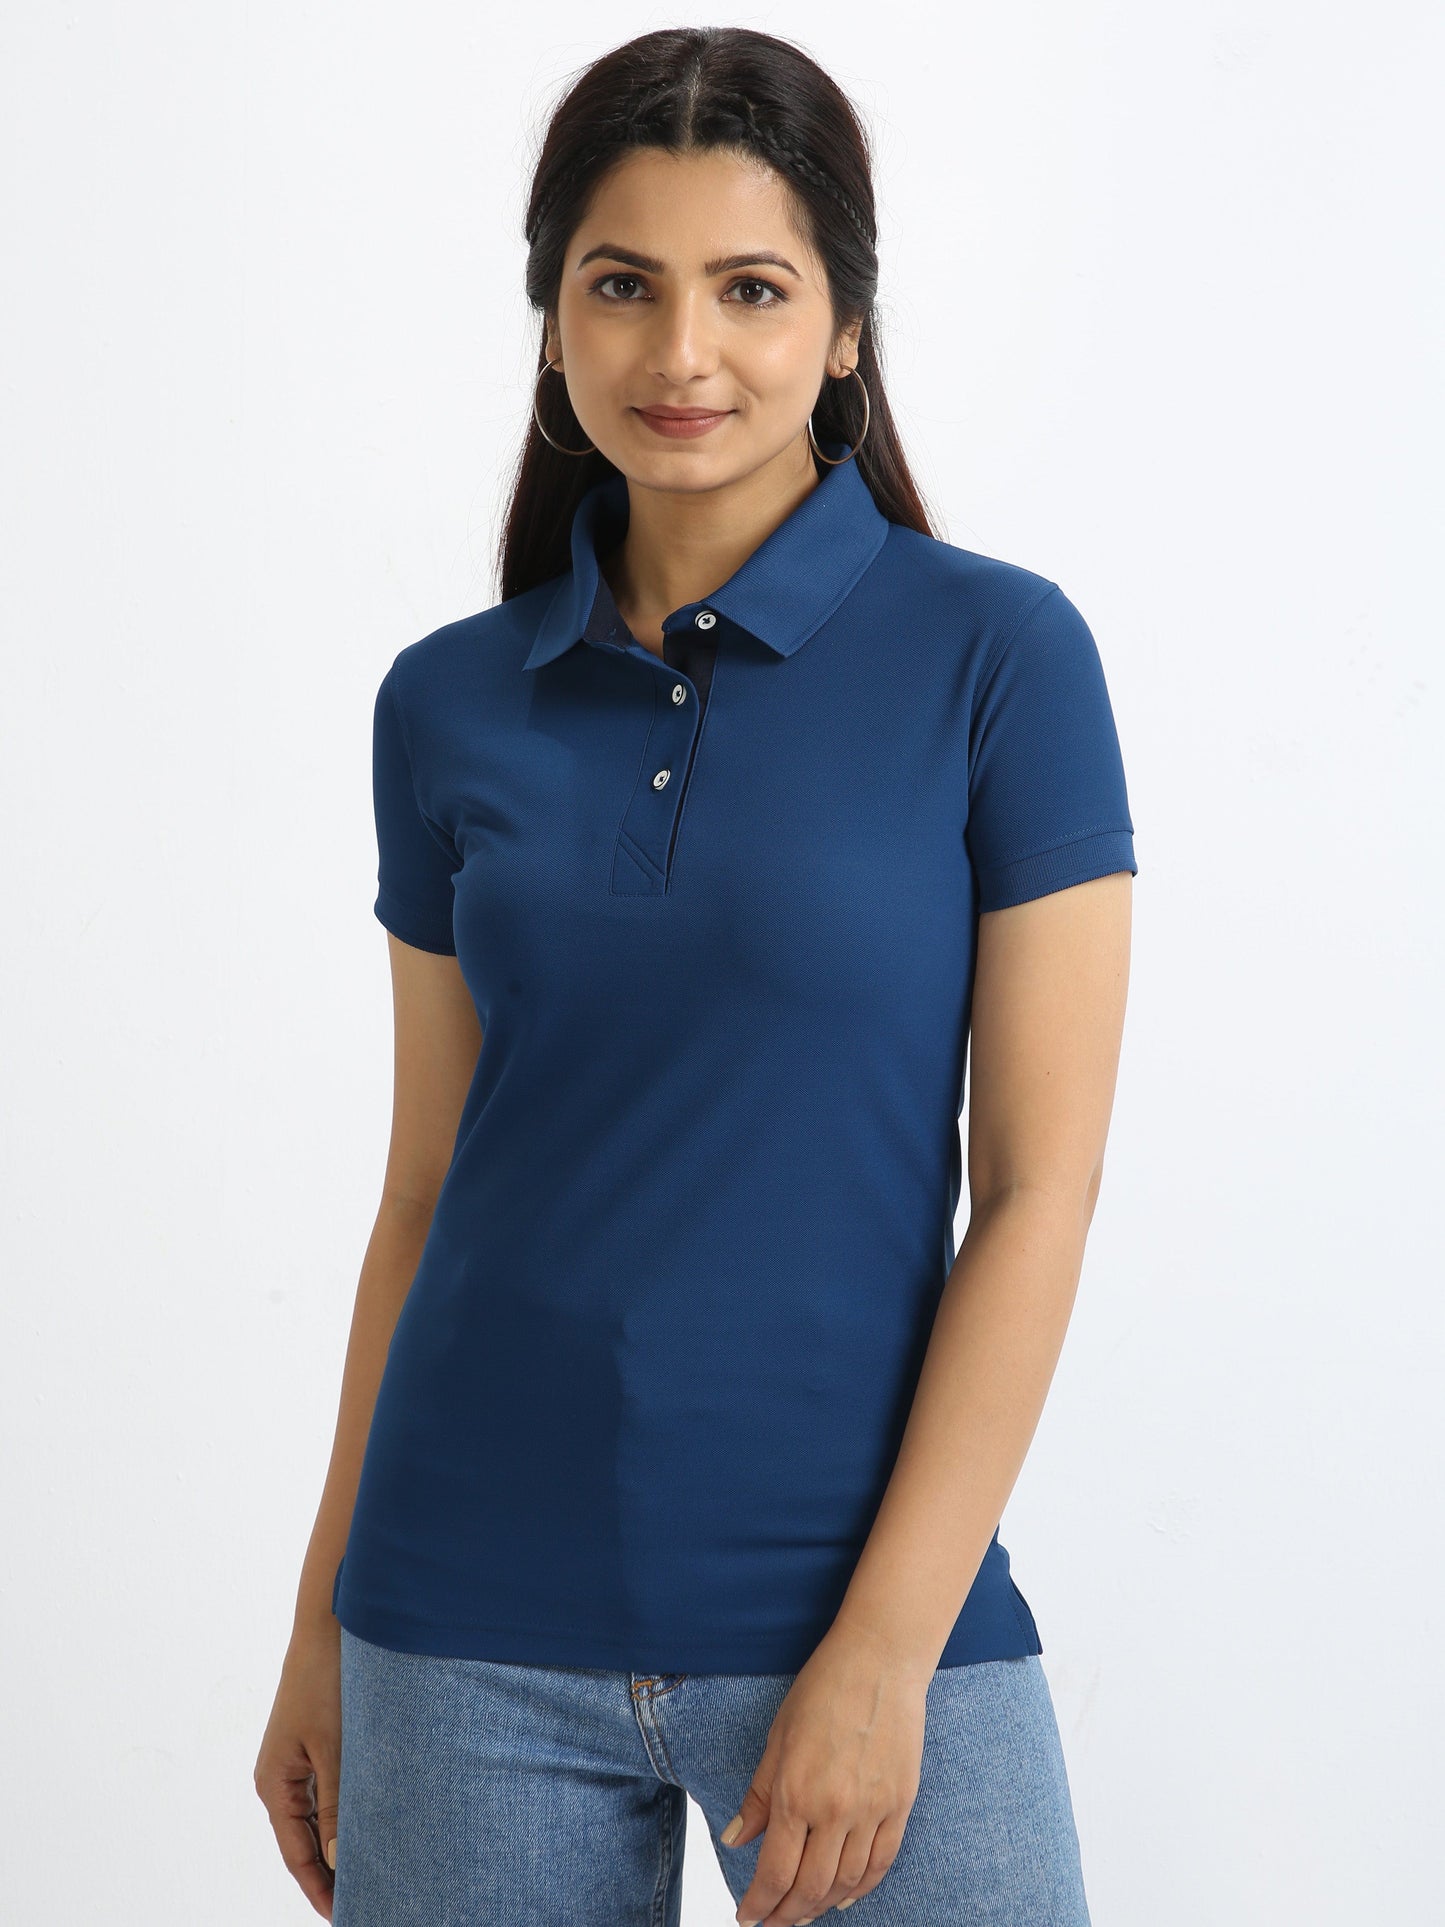 Harbour Blue Women's Polo T-shirt